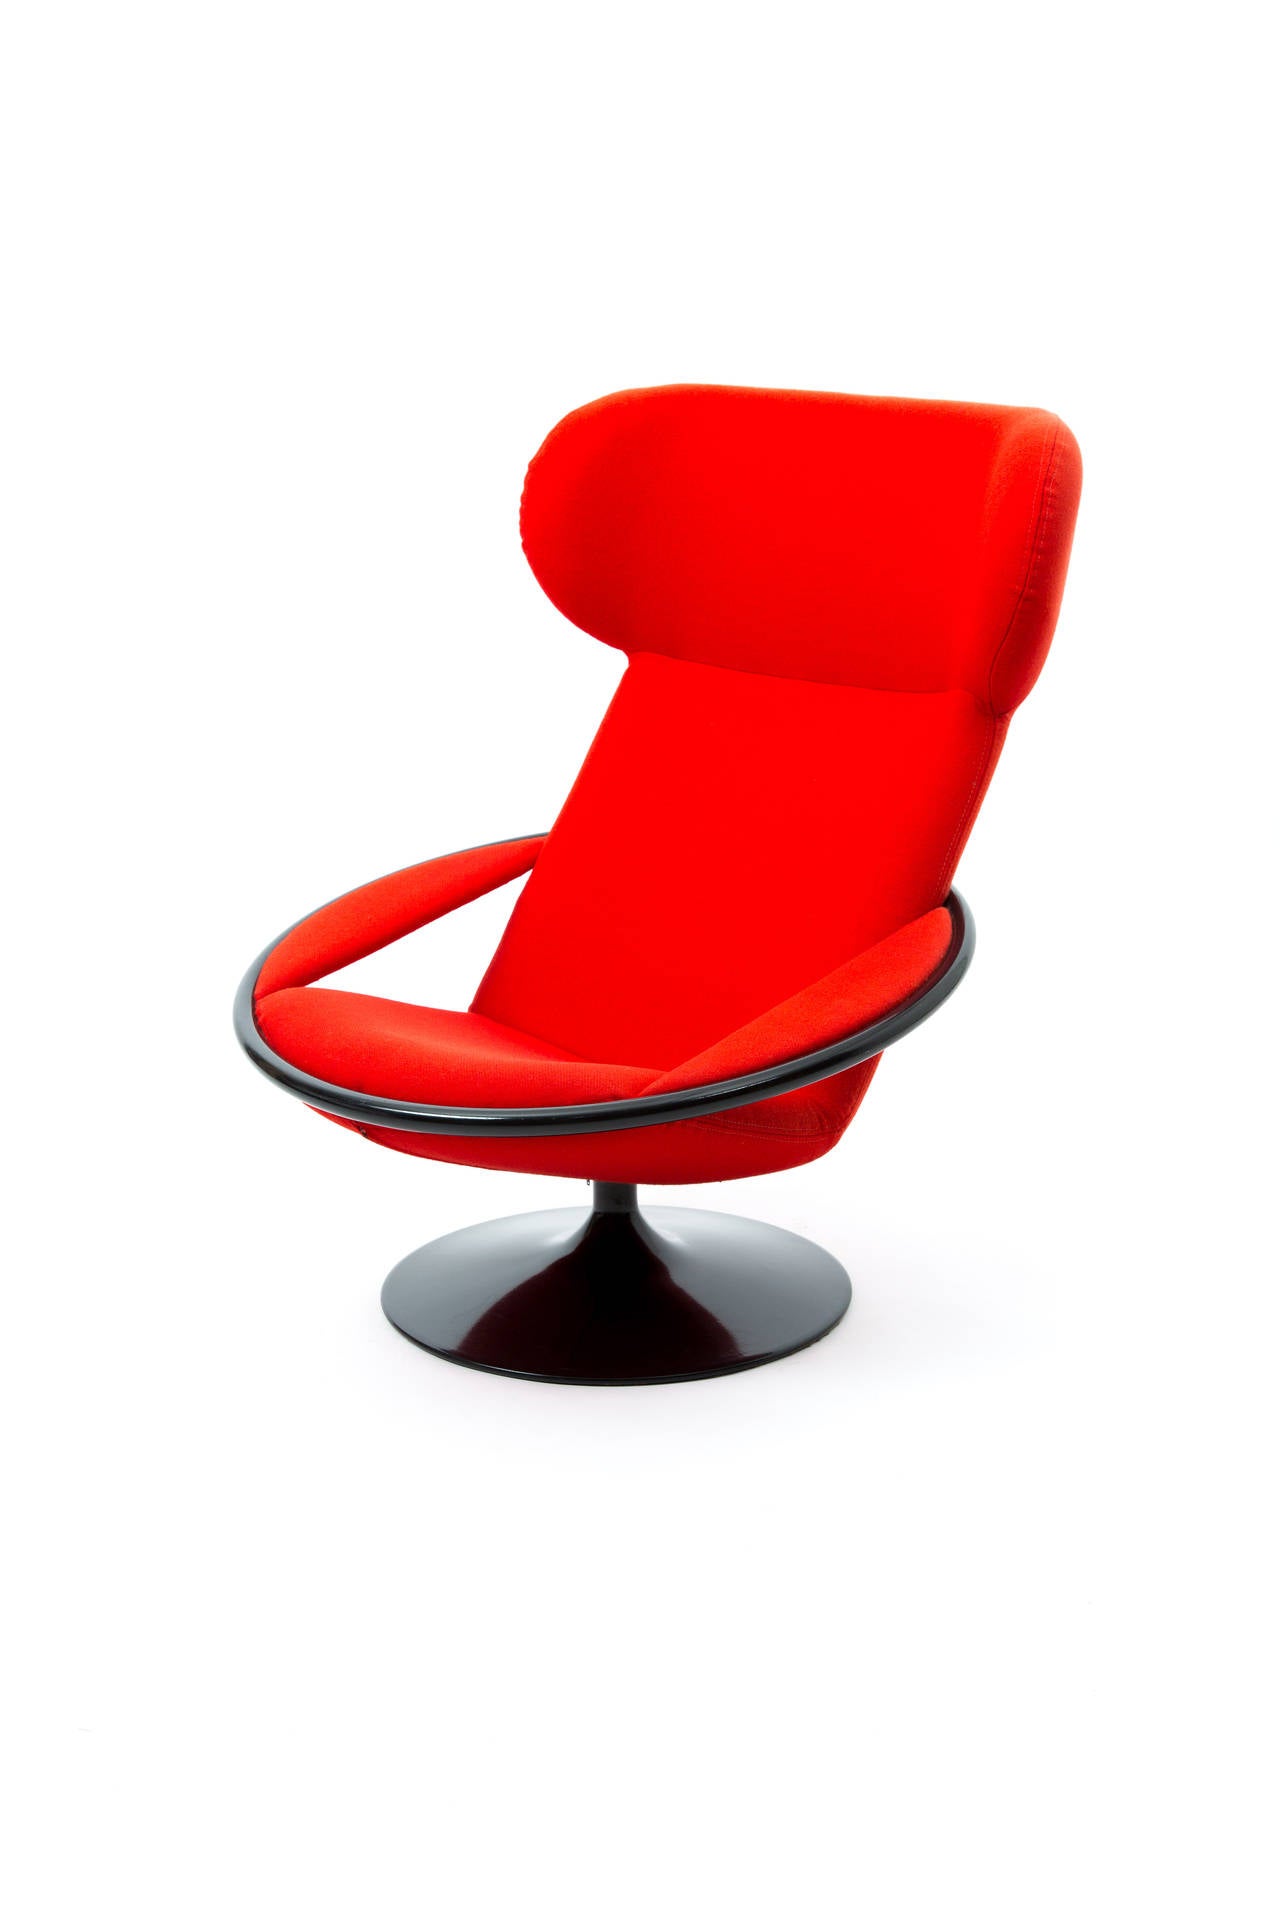 Artifort Dutch Design Geoffrey Harcourt Lounge Chair 2